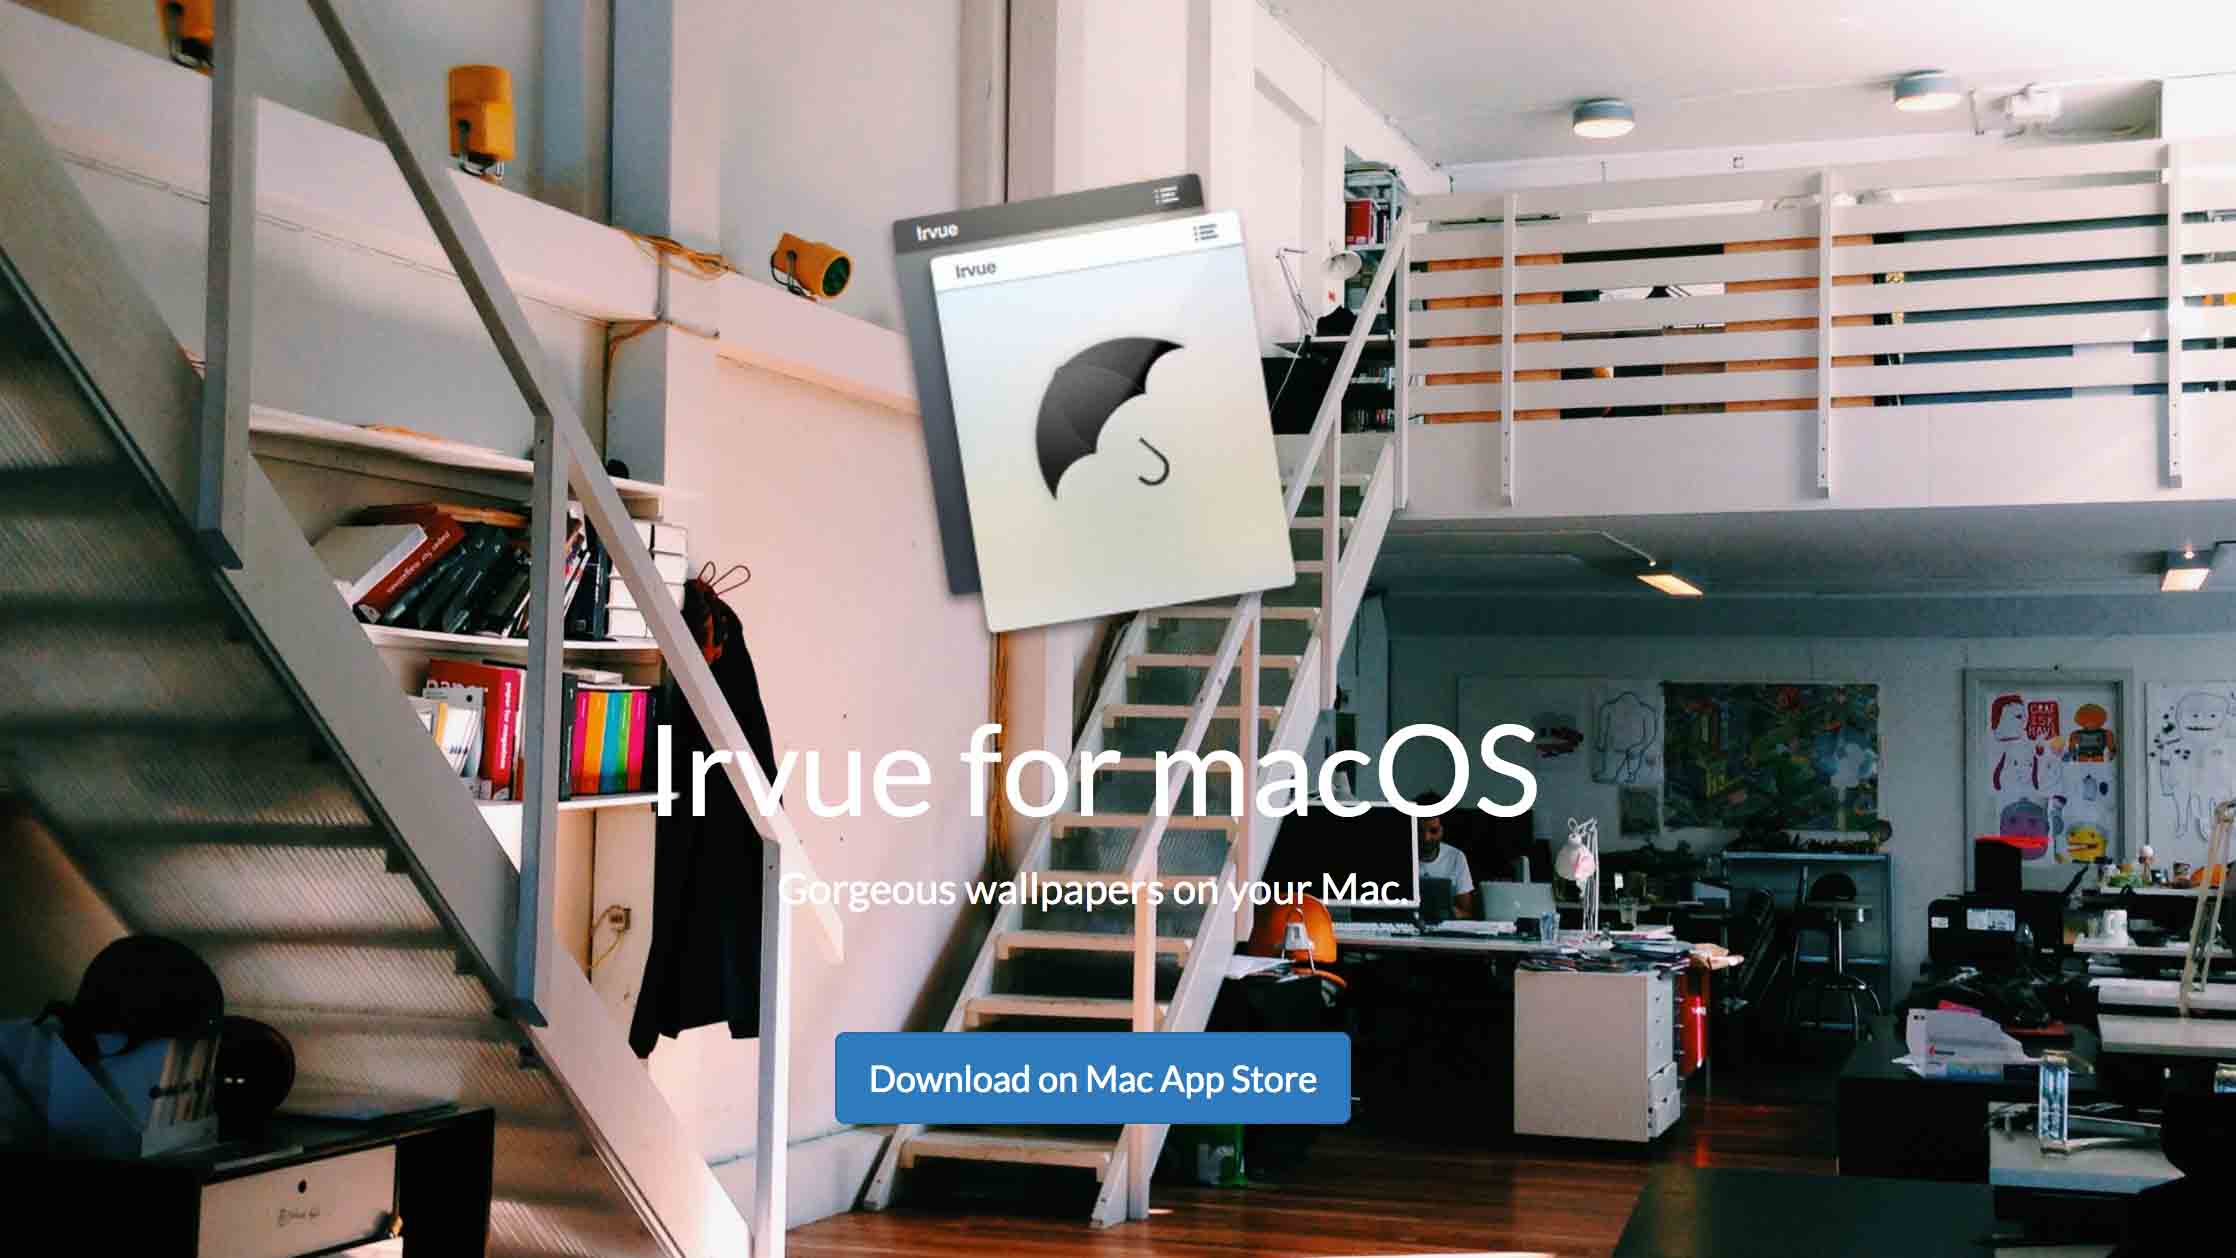 Irvue: Tự động thay đổi hình nền mỗi giờ trên macOS